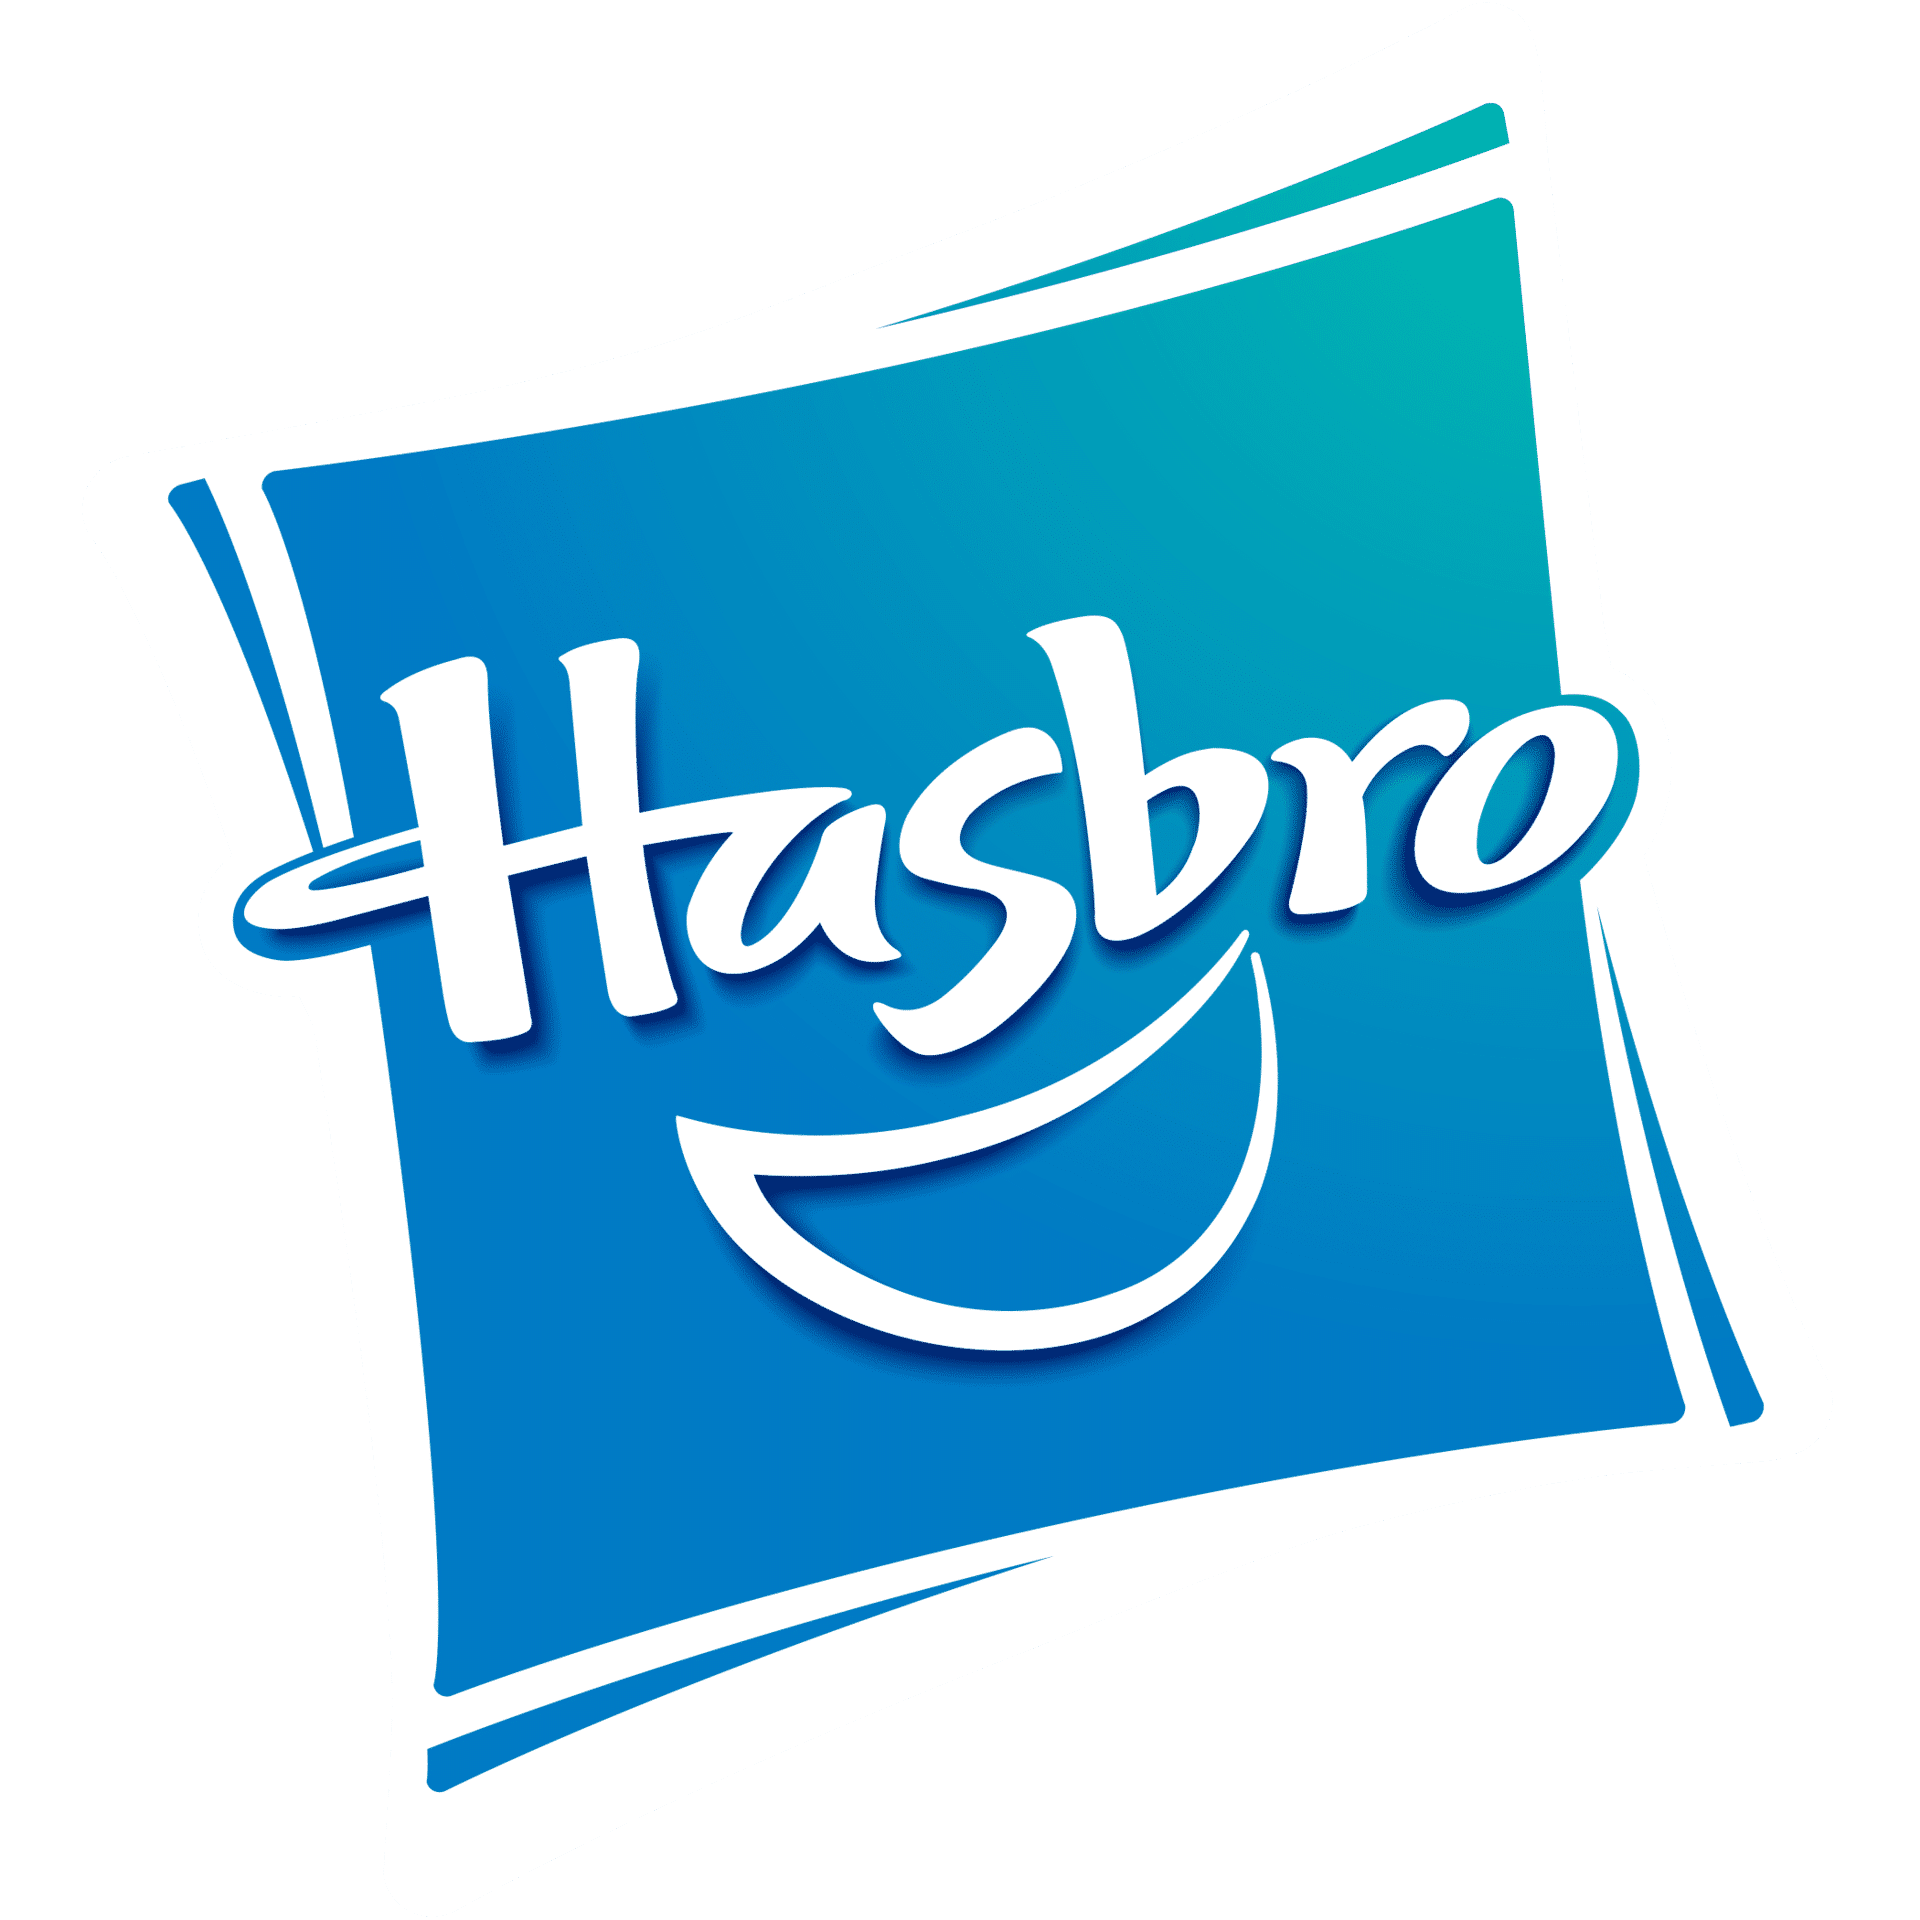 Hasbro_4c_no_R